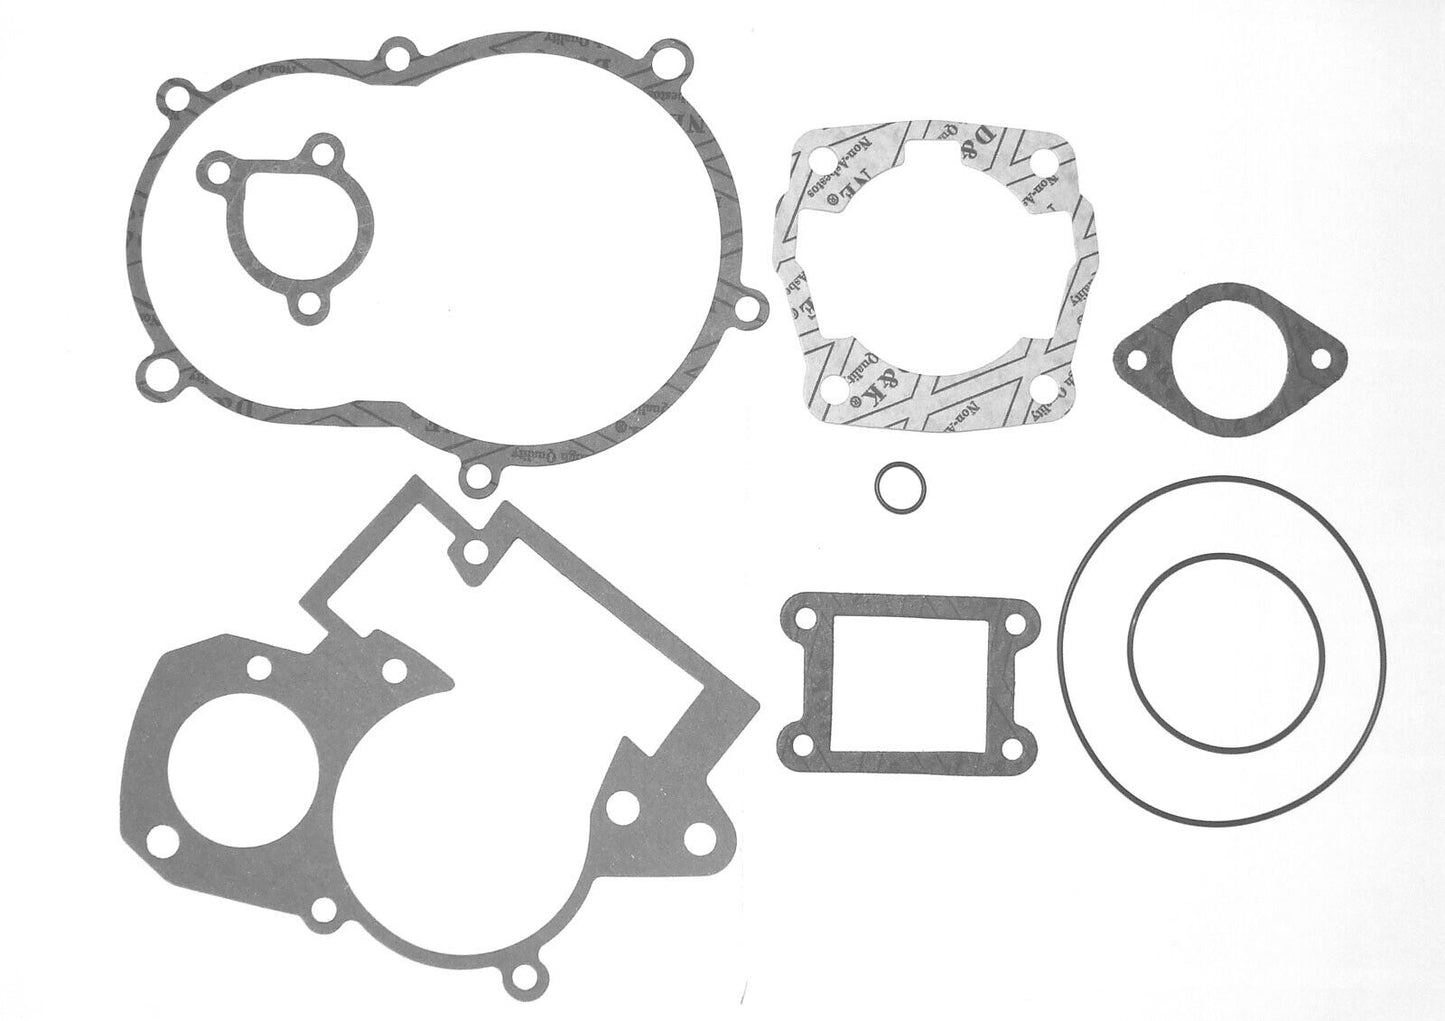 KTM 50 SX LC (2001-2008) Engine Rebuild Kit, Main Bearings, Gasket Set & Seals